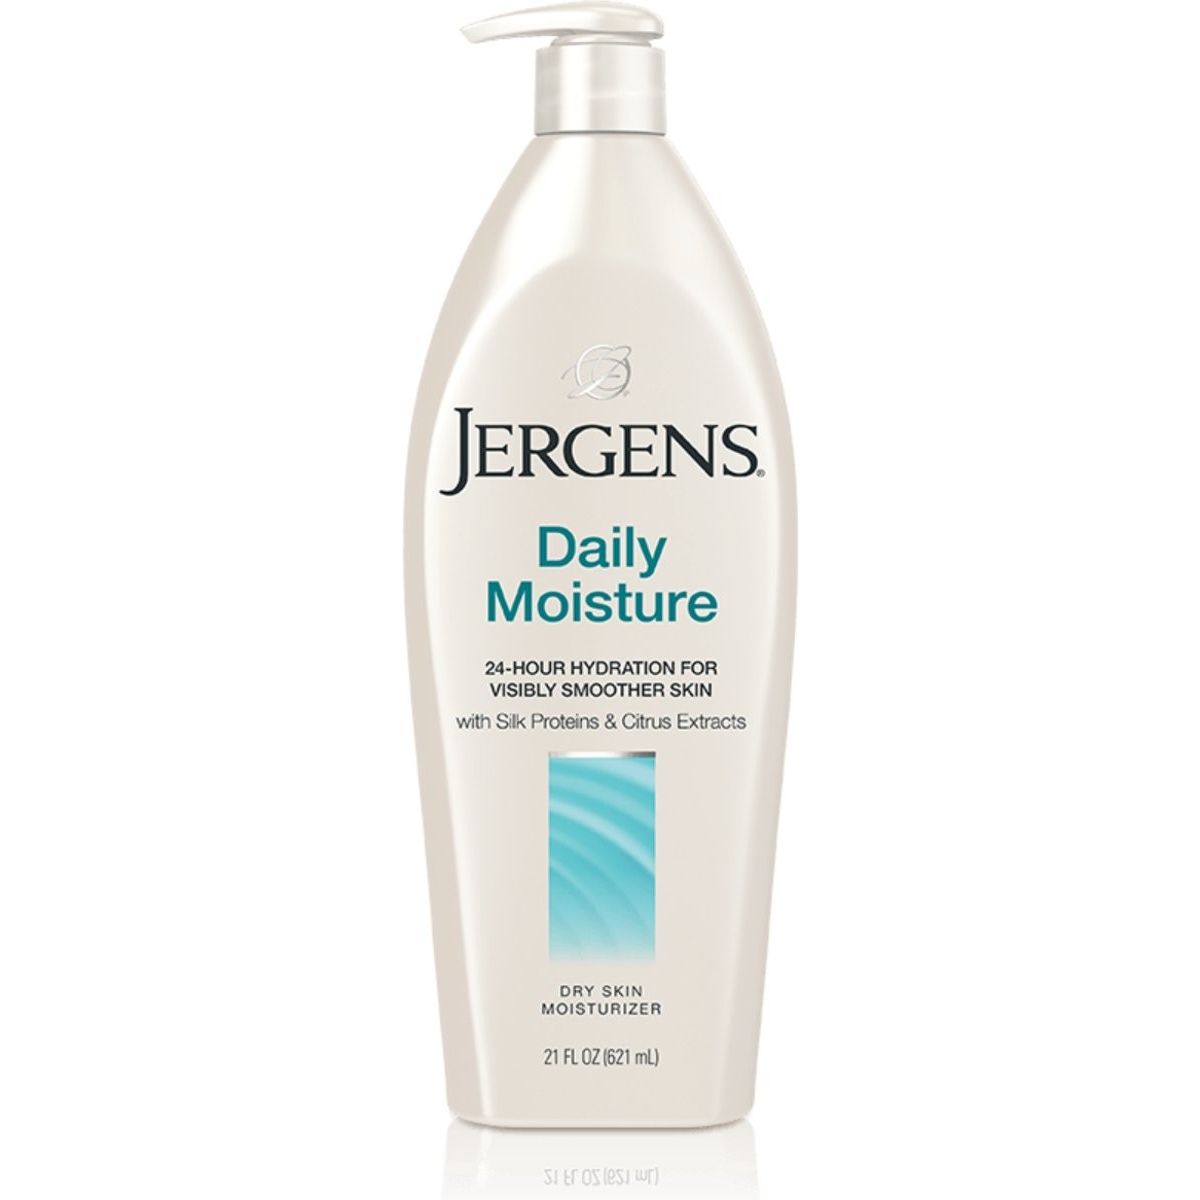 Jergens Daily Moisture Dry Skin Moisturizer 21oz/621 ml